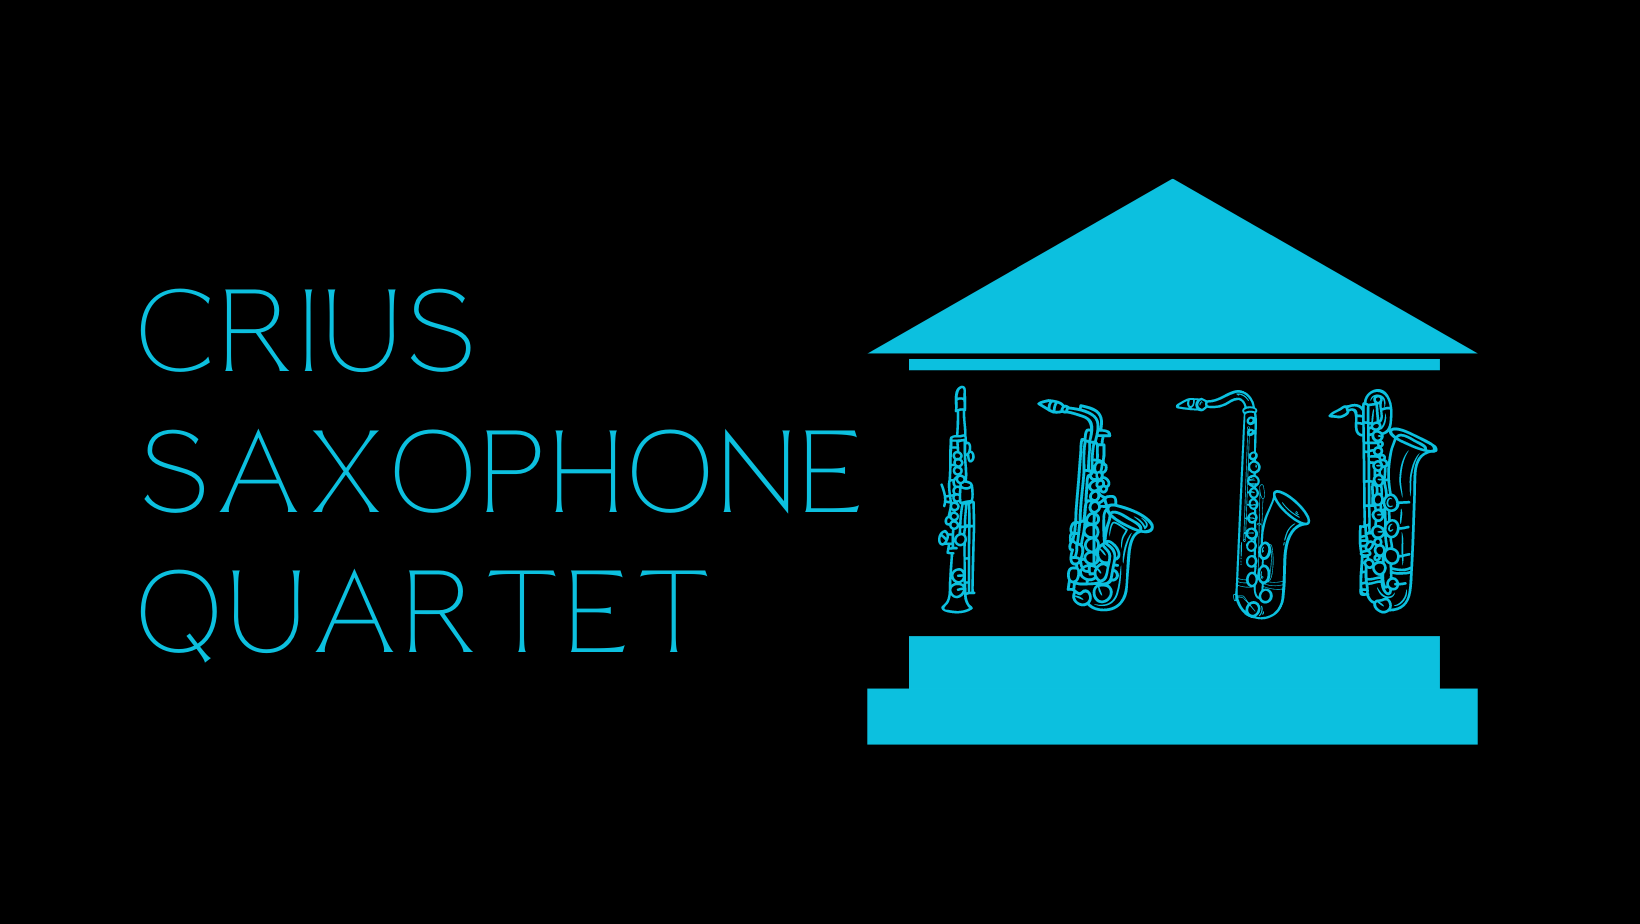 Crius Saxophone Quartet